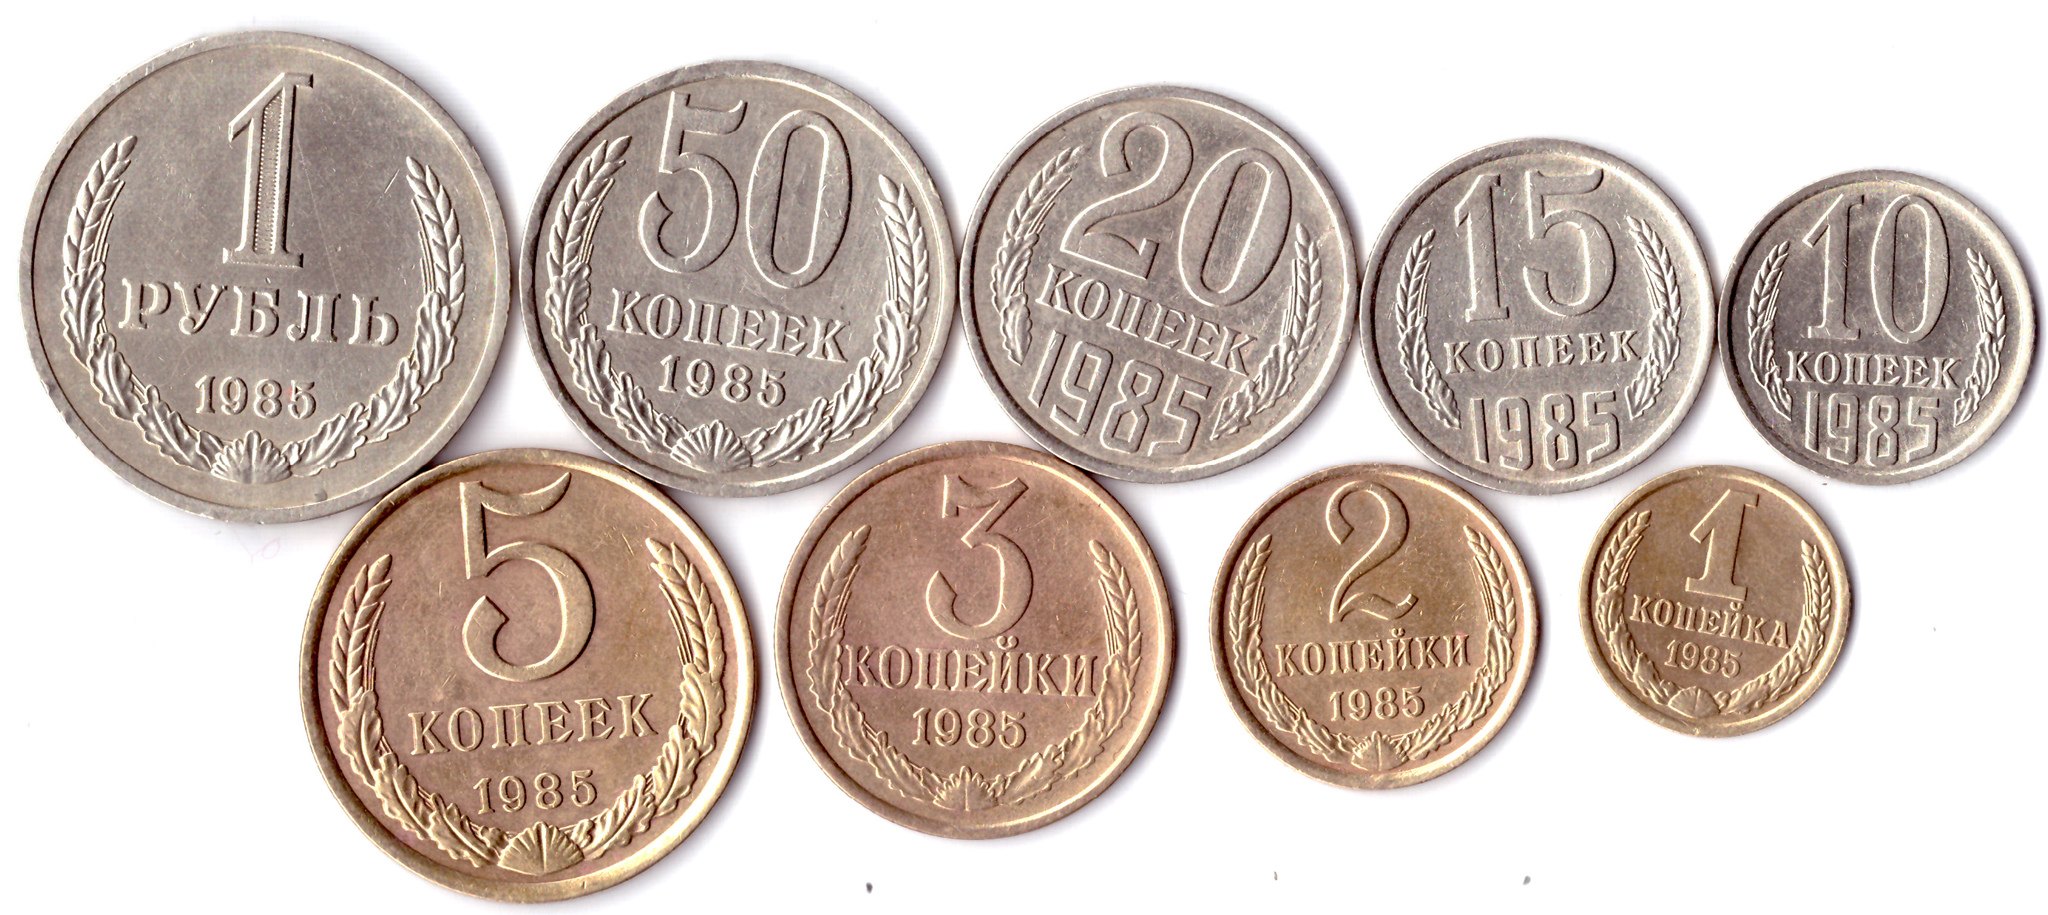 25 руб копеек. Монеты СССР. Деньги СССР монеты. Советские металлические деньги. Советские копейки.